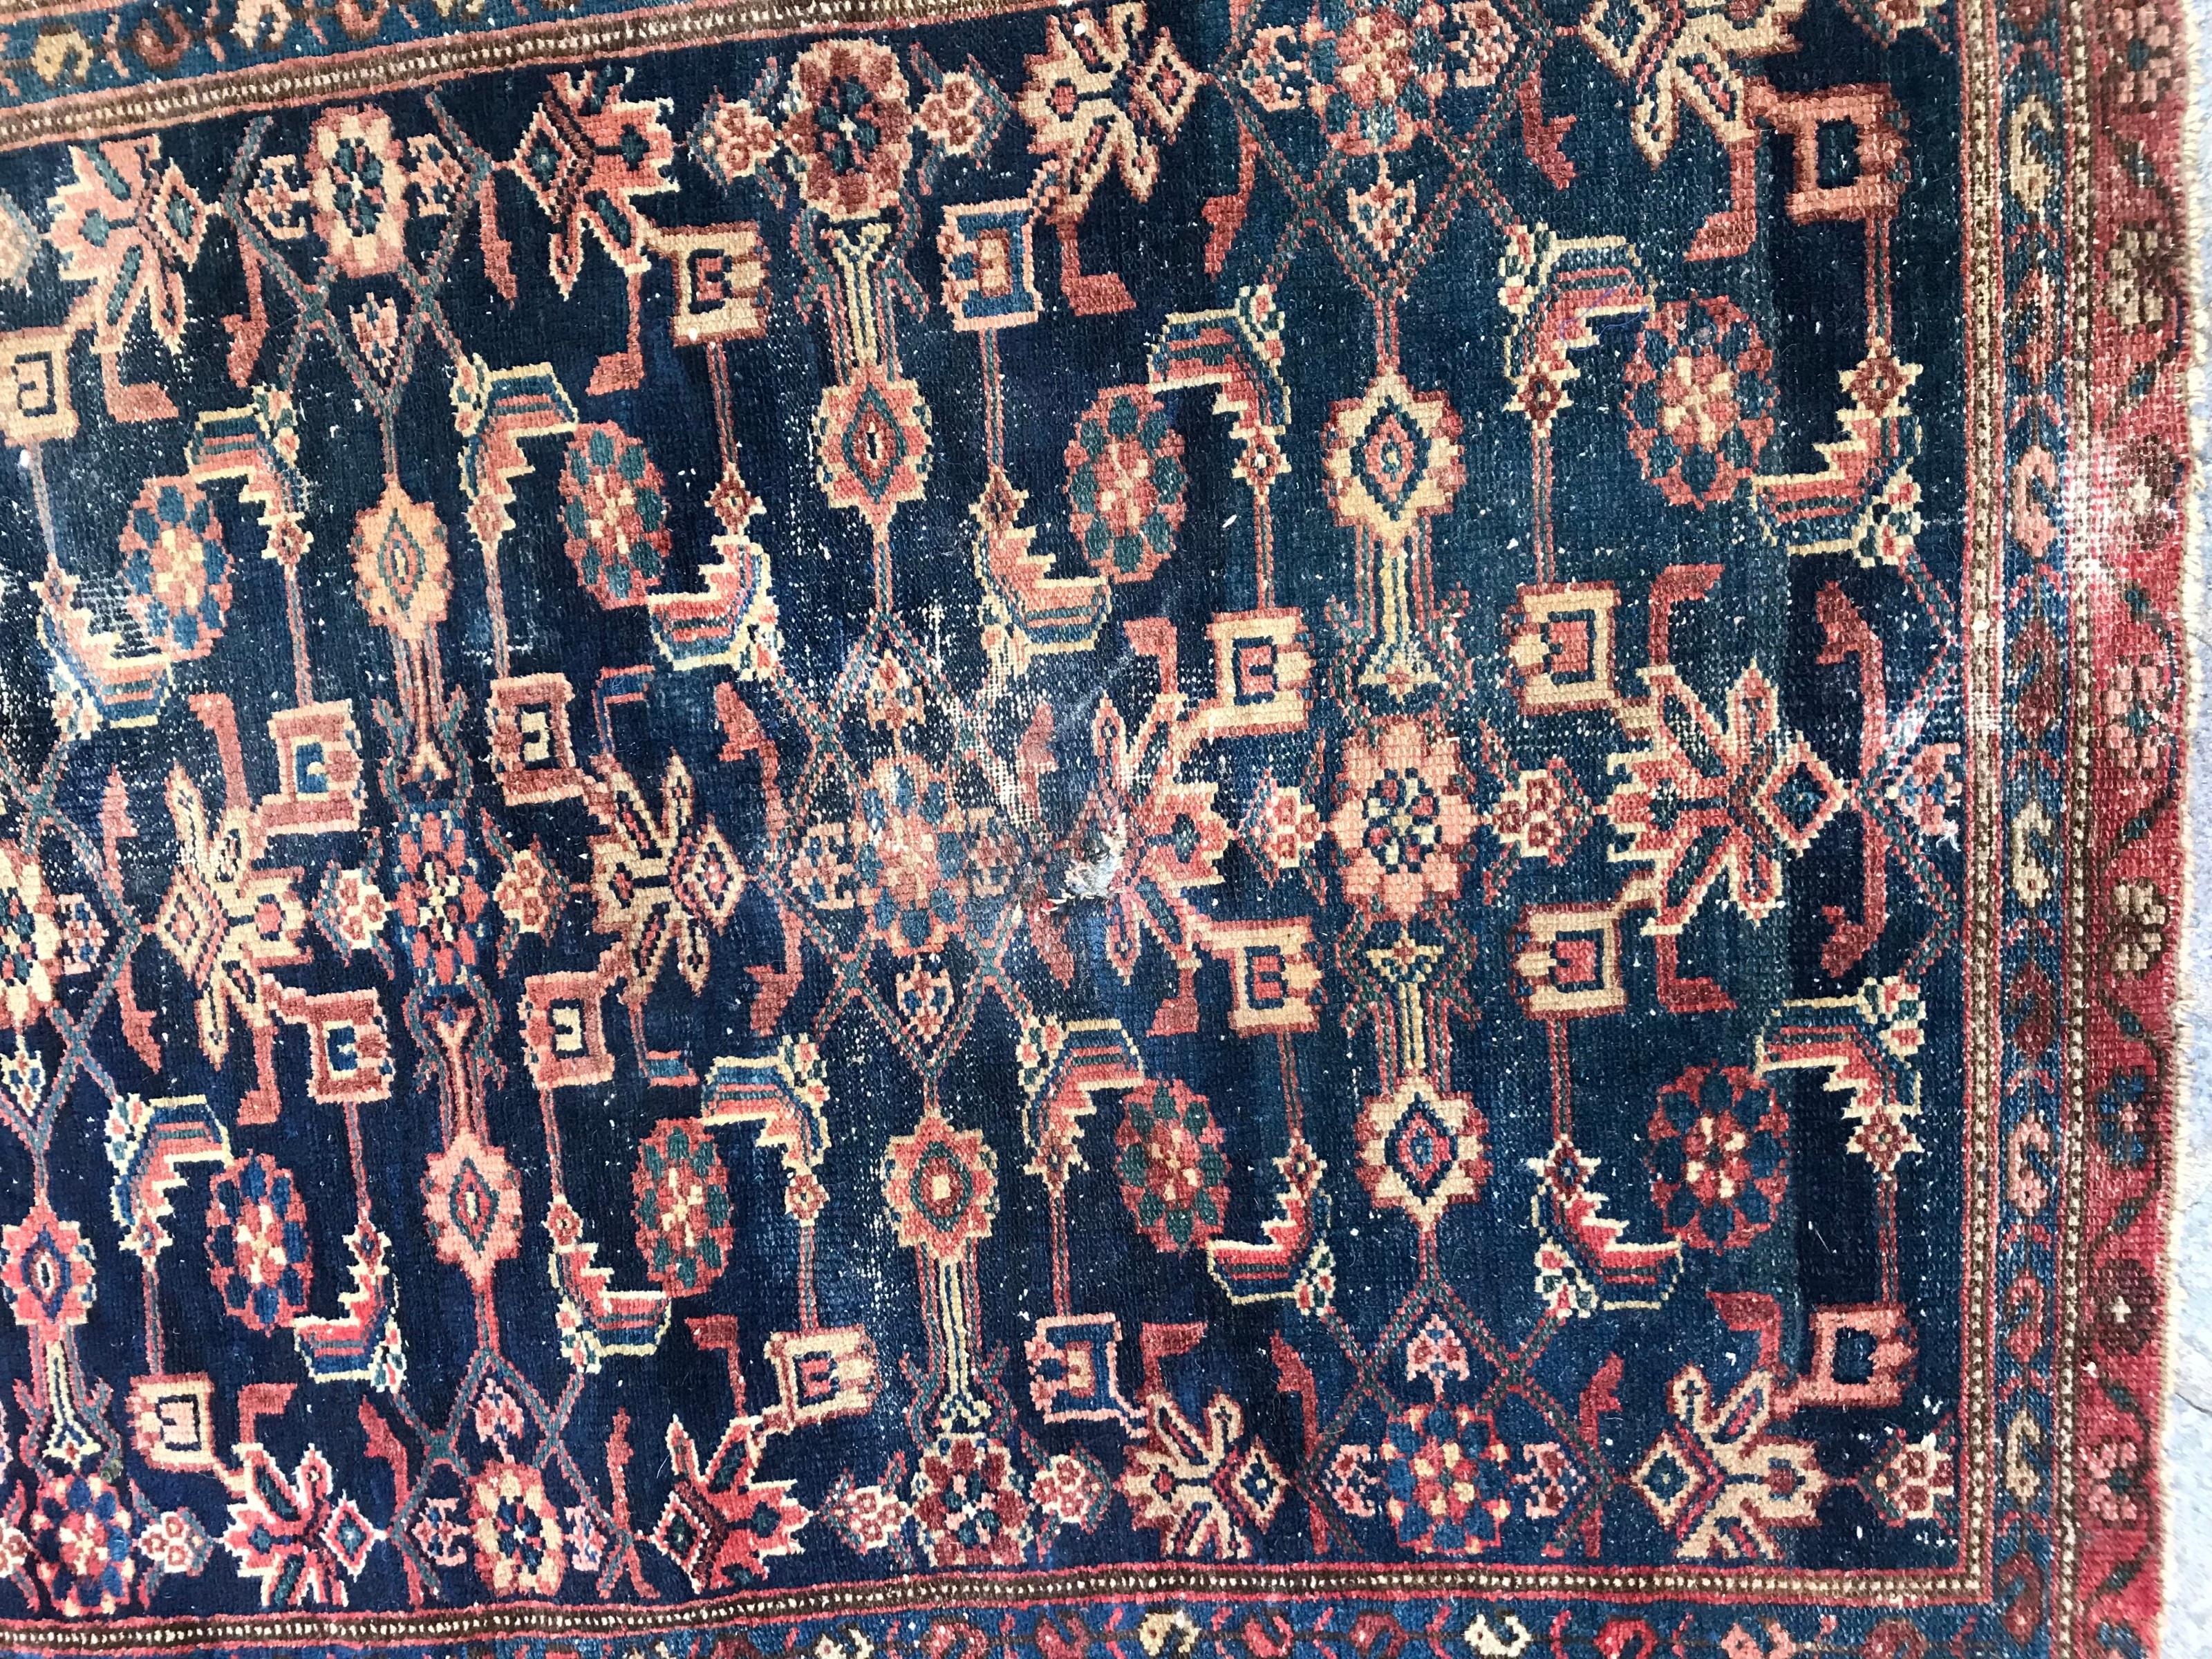 Magnifique petit tapis de la fin du 19ème siècle avec un design Herati et des couleurs naturelles avec du bleu, du rouge et du vert, entièrement noué à la main avec du velours de laine sur une base de coton.

✨✨✨
